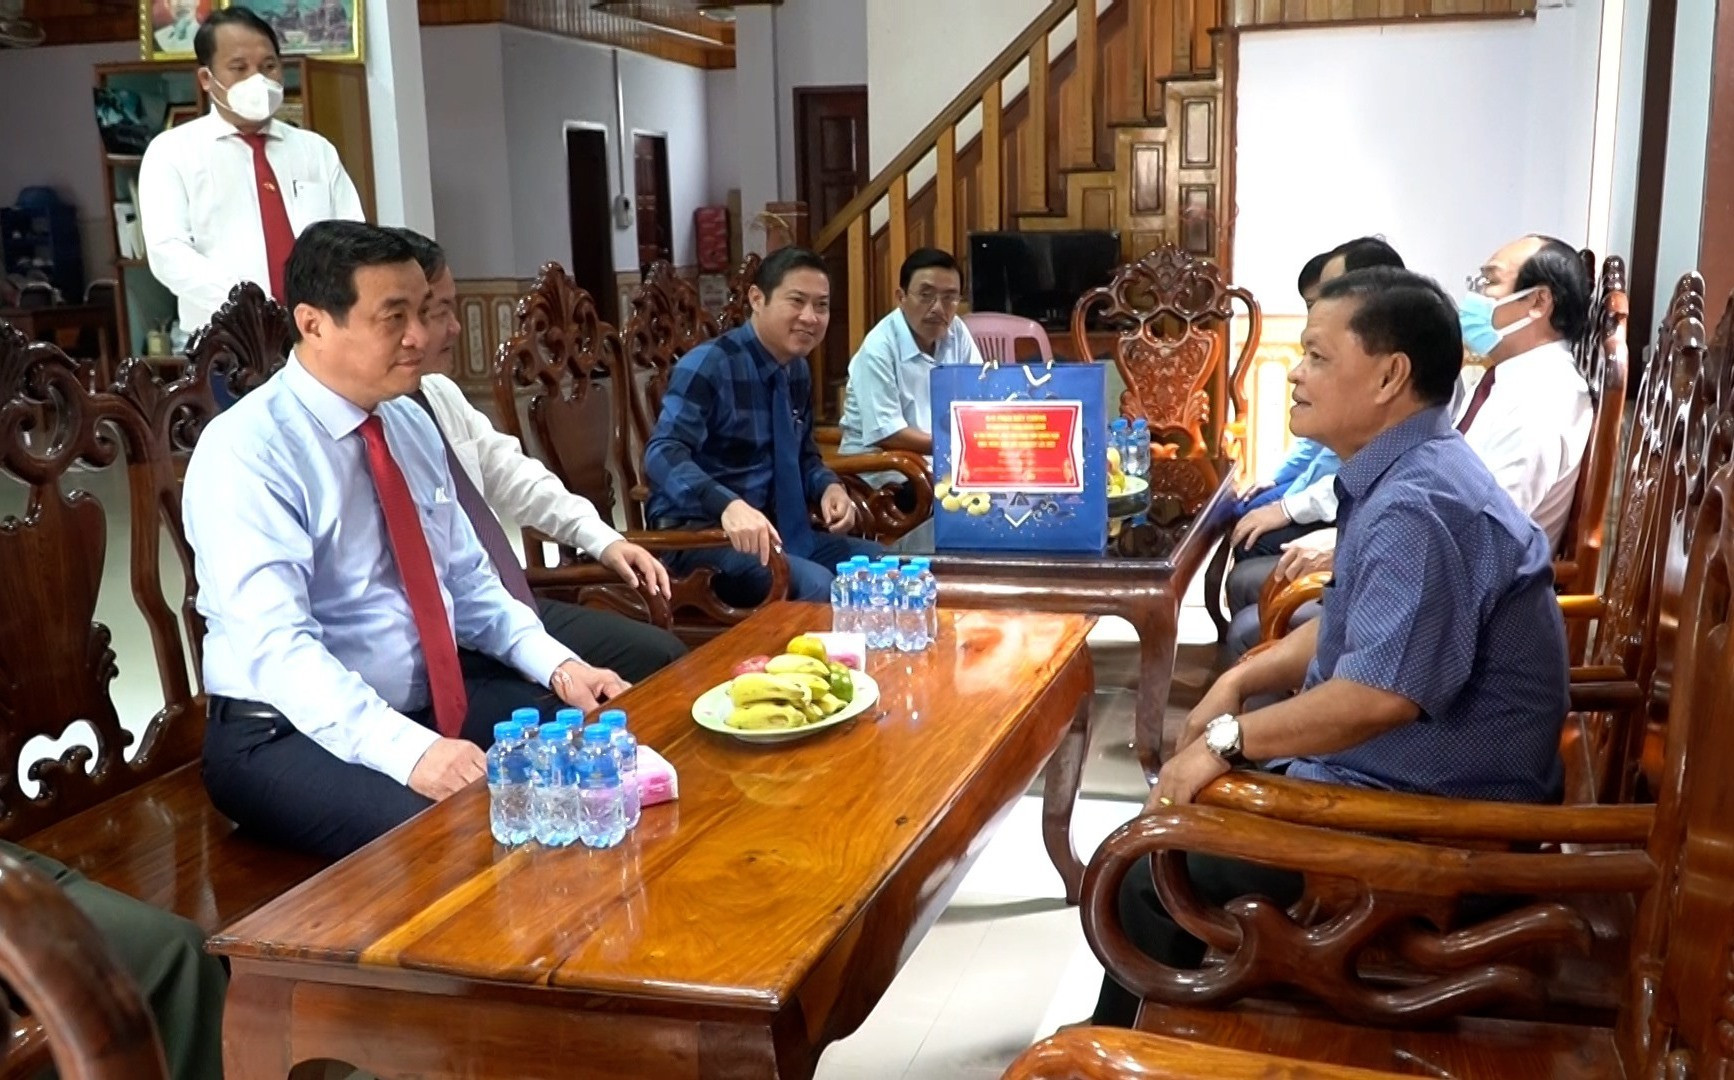 đoàn công tác đến thăm, chúc tết gia đình các đồng chí nguyên lãnh đạo tỉnh Sê Kông.